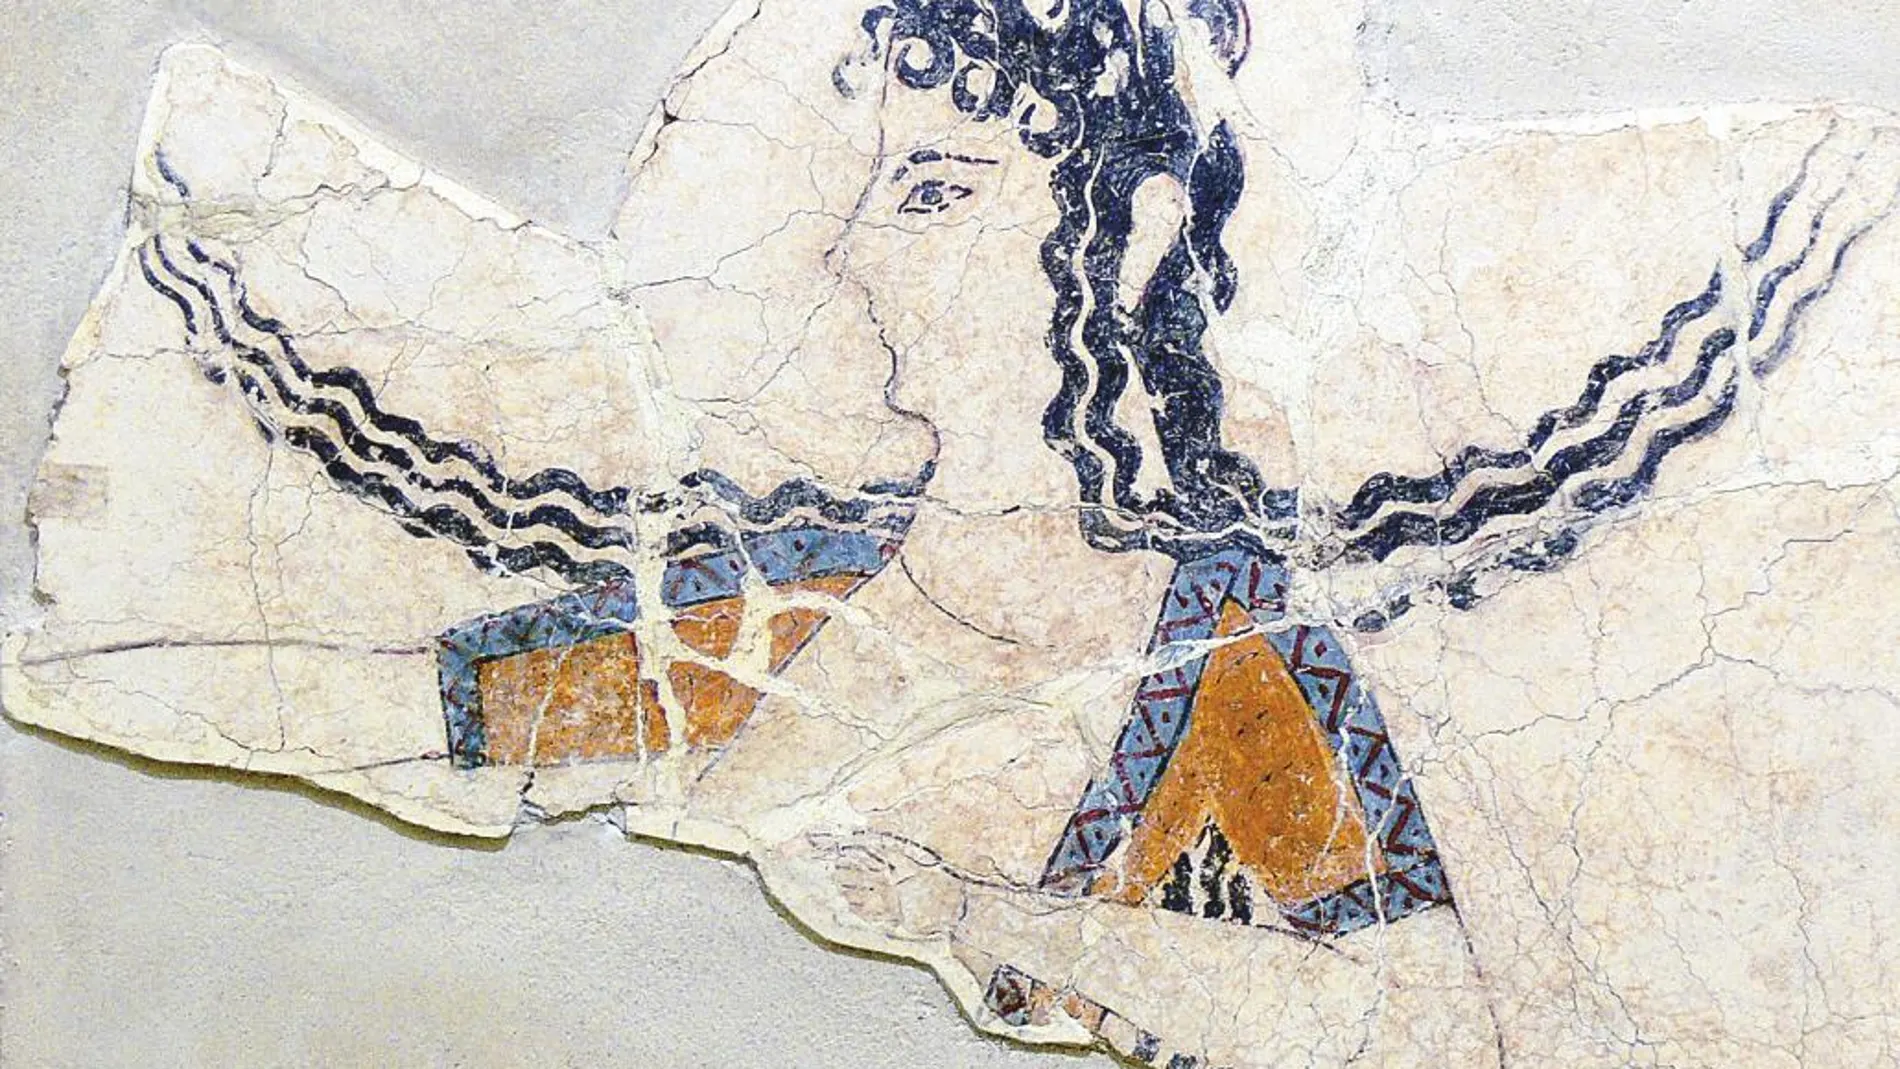 Parte de un fresco que data de los años 1600-1450 antes de Cristo en el que se puede ver a una mujer de la civilización minoica bailando